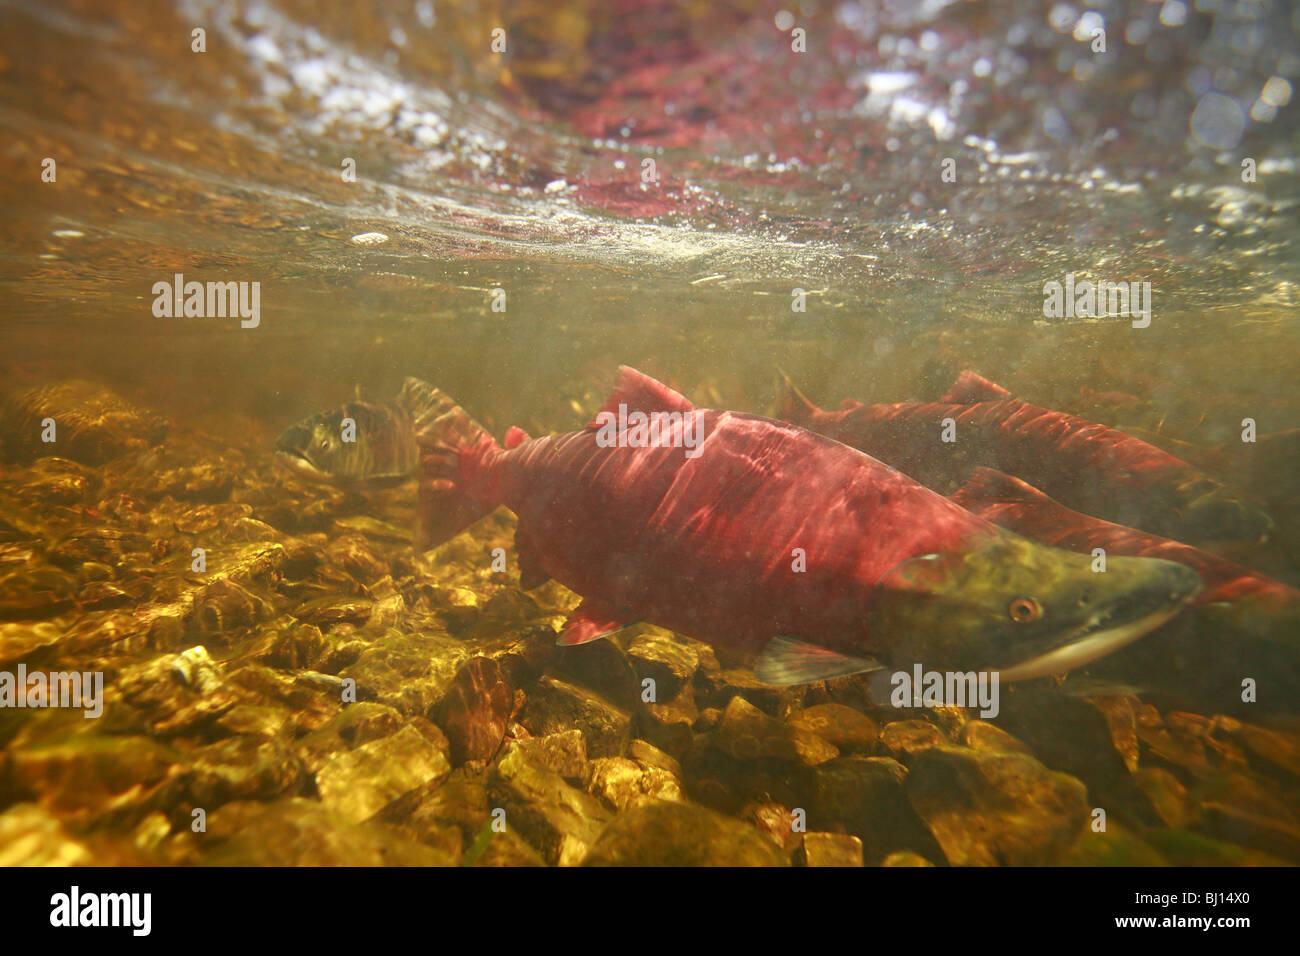 Underwater image of sockeye salmon returning to spawn, Babine Lake, British Columbia Stock Photo